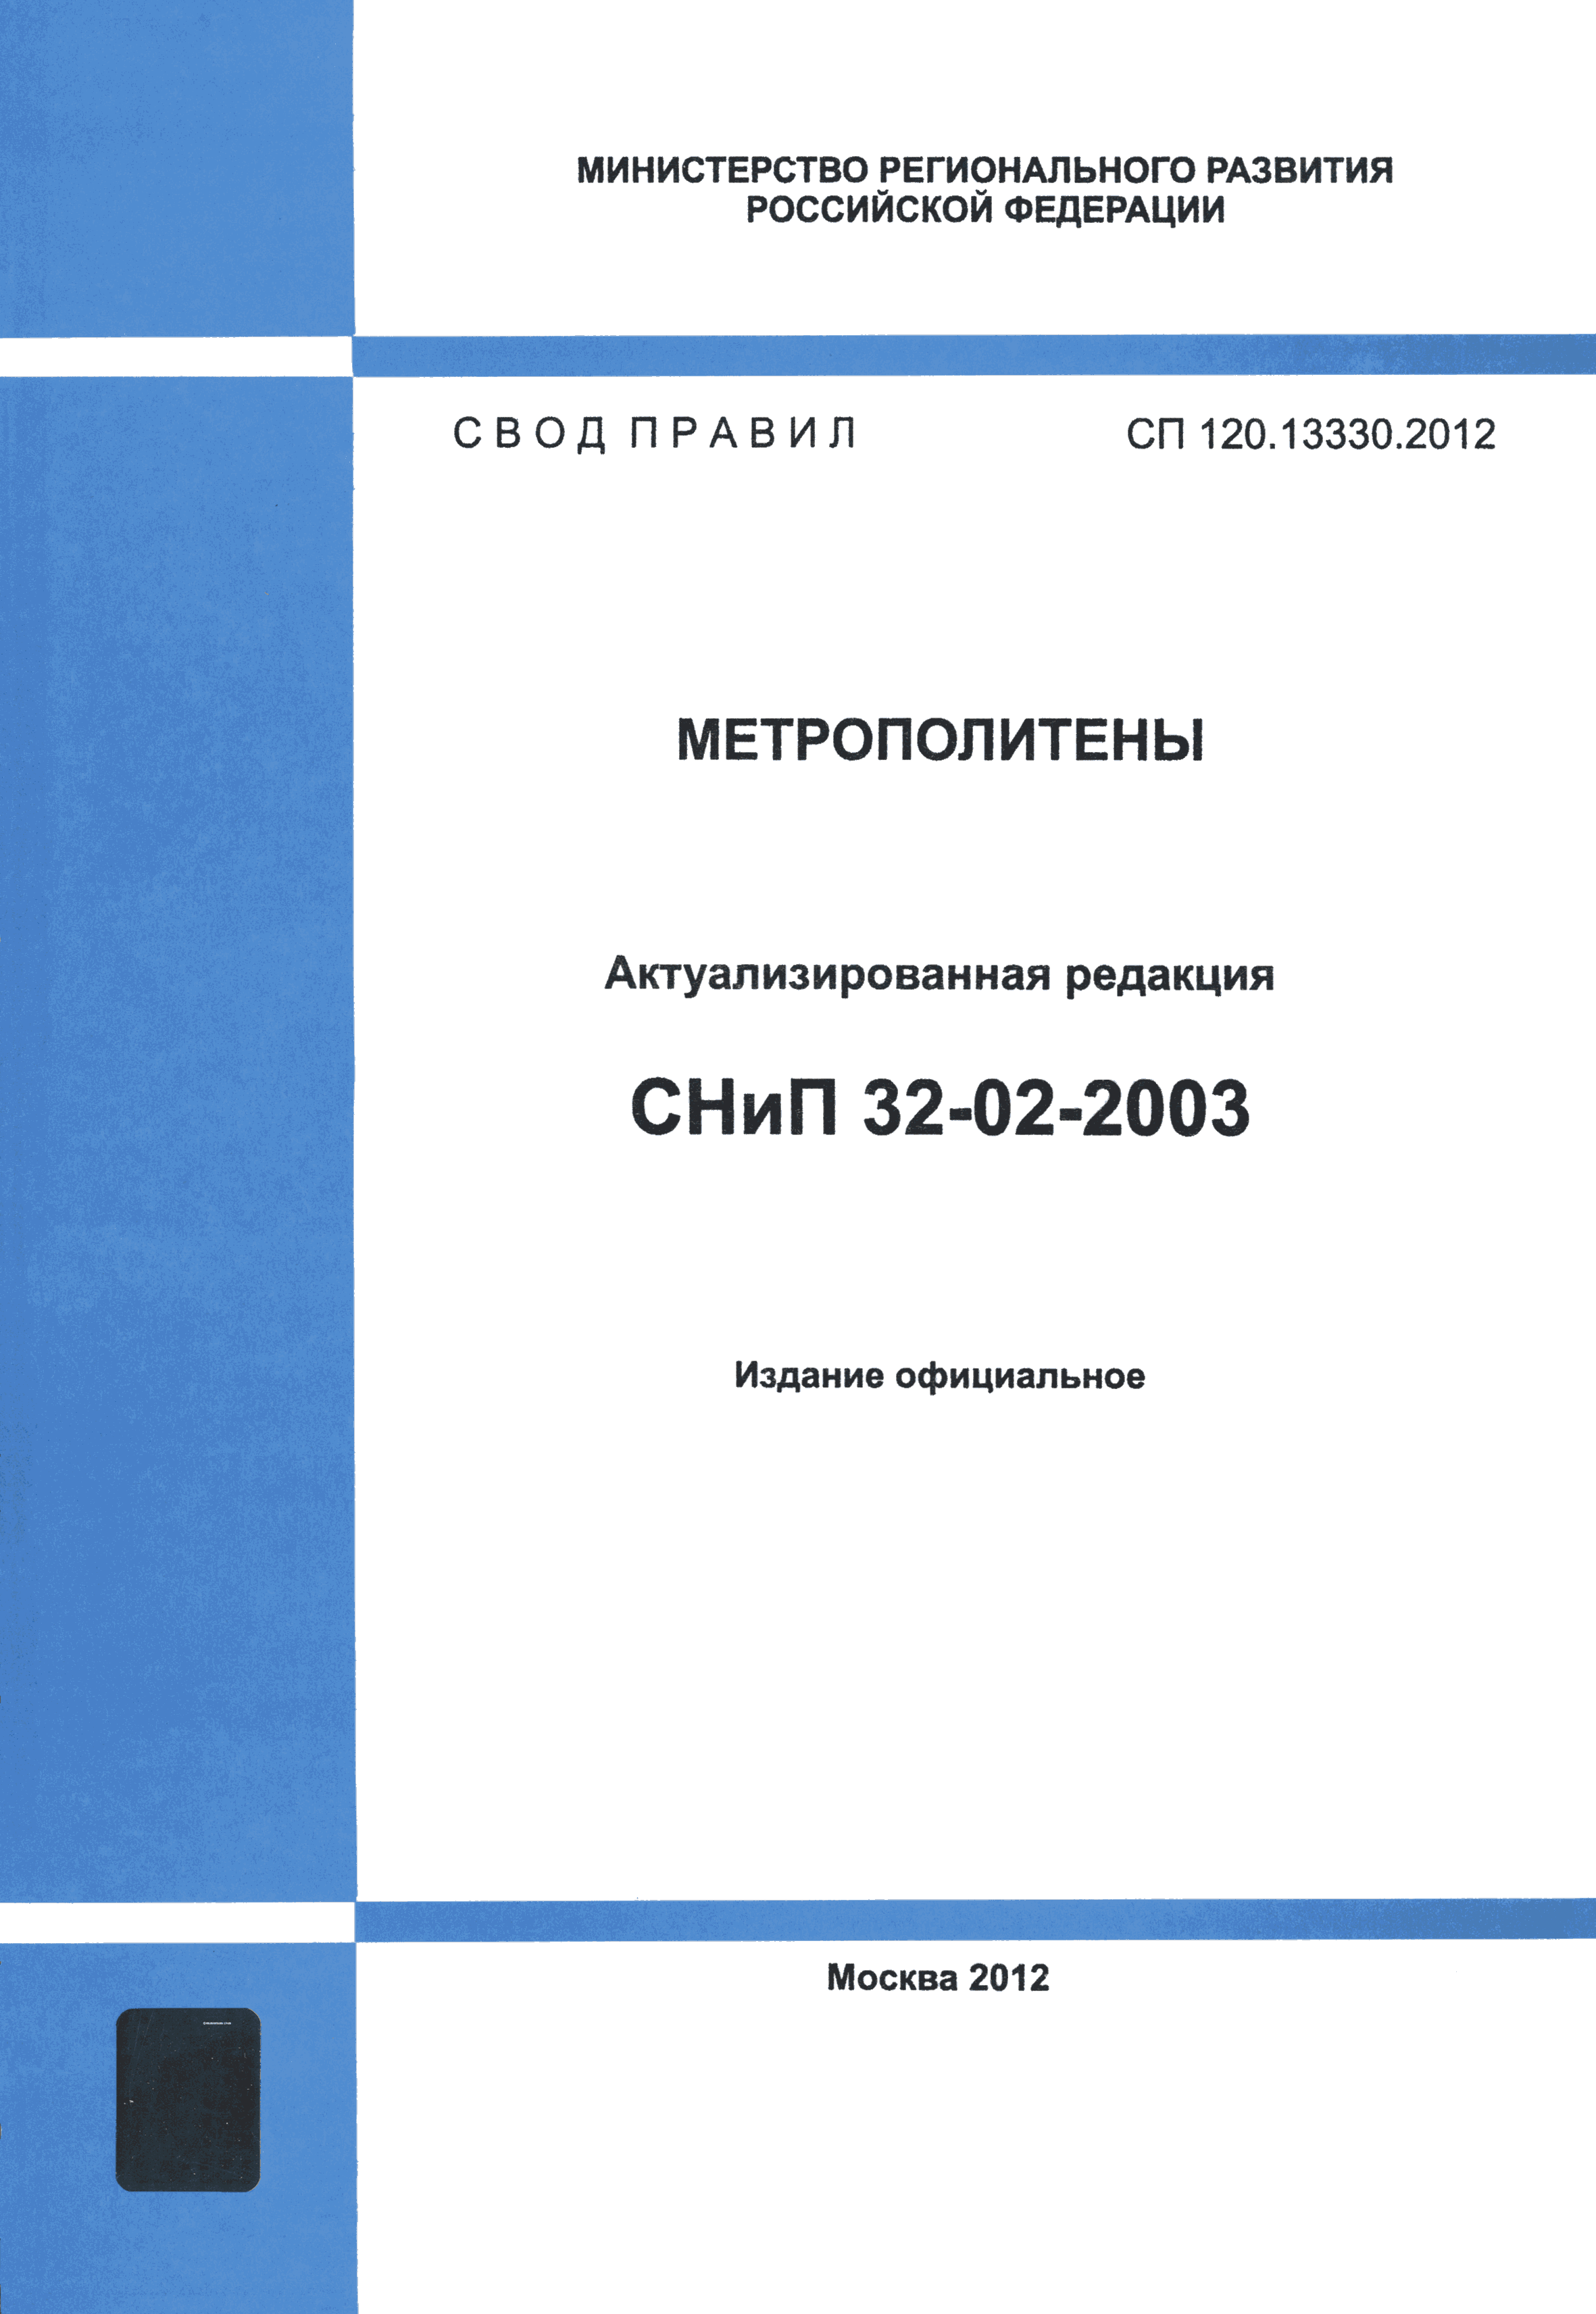 СП 120.13330.2012